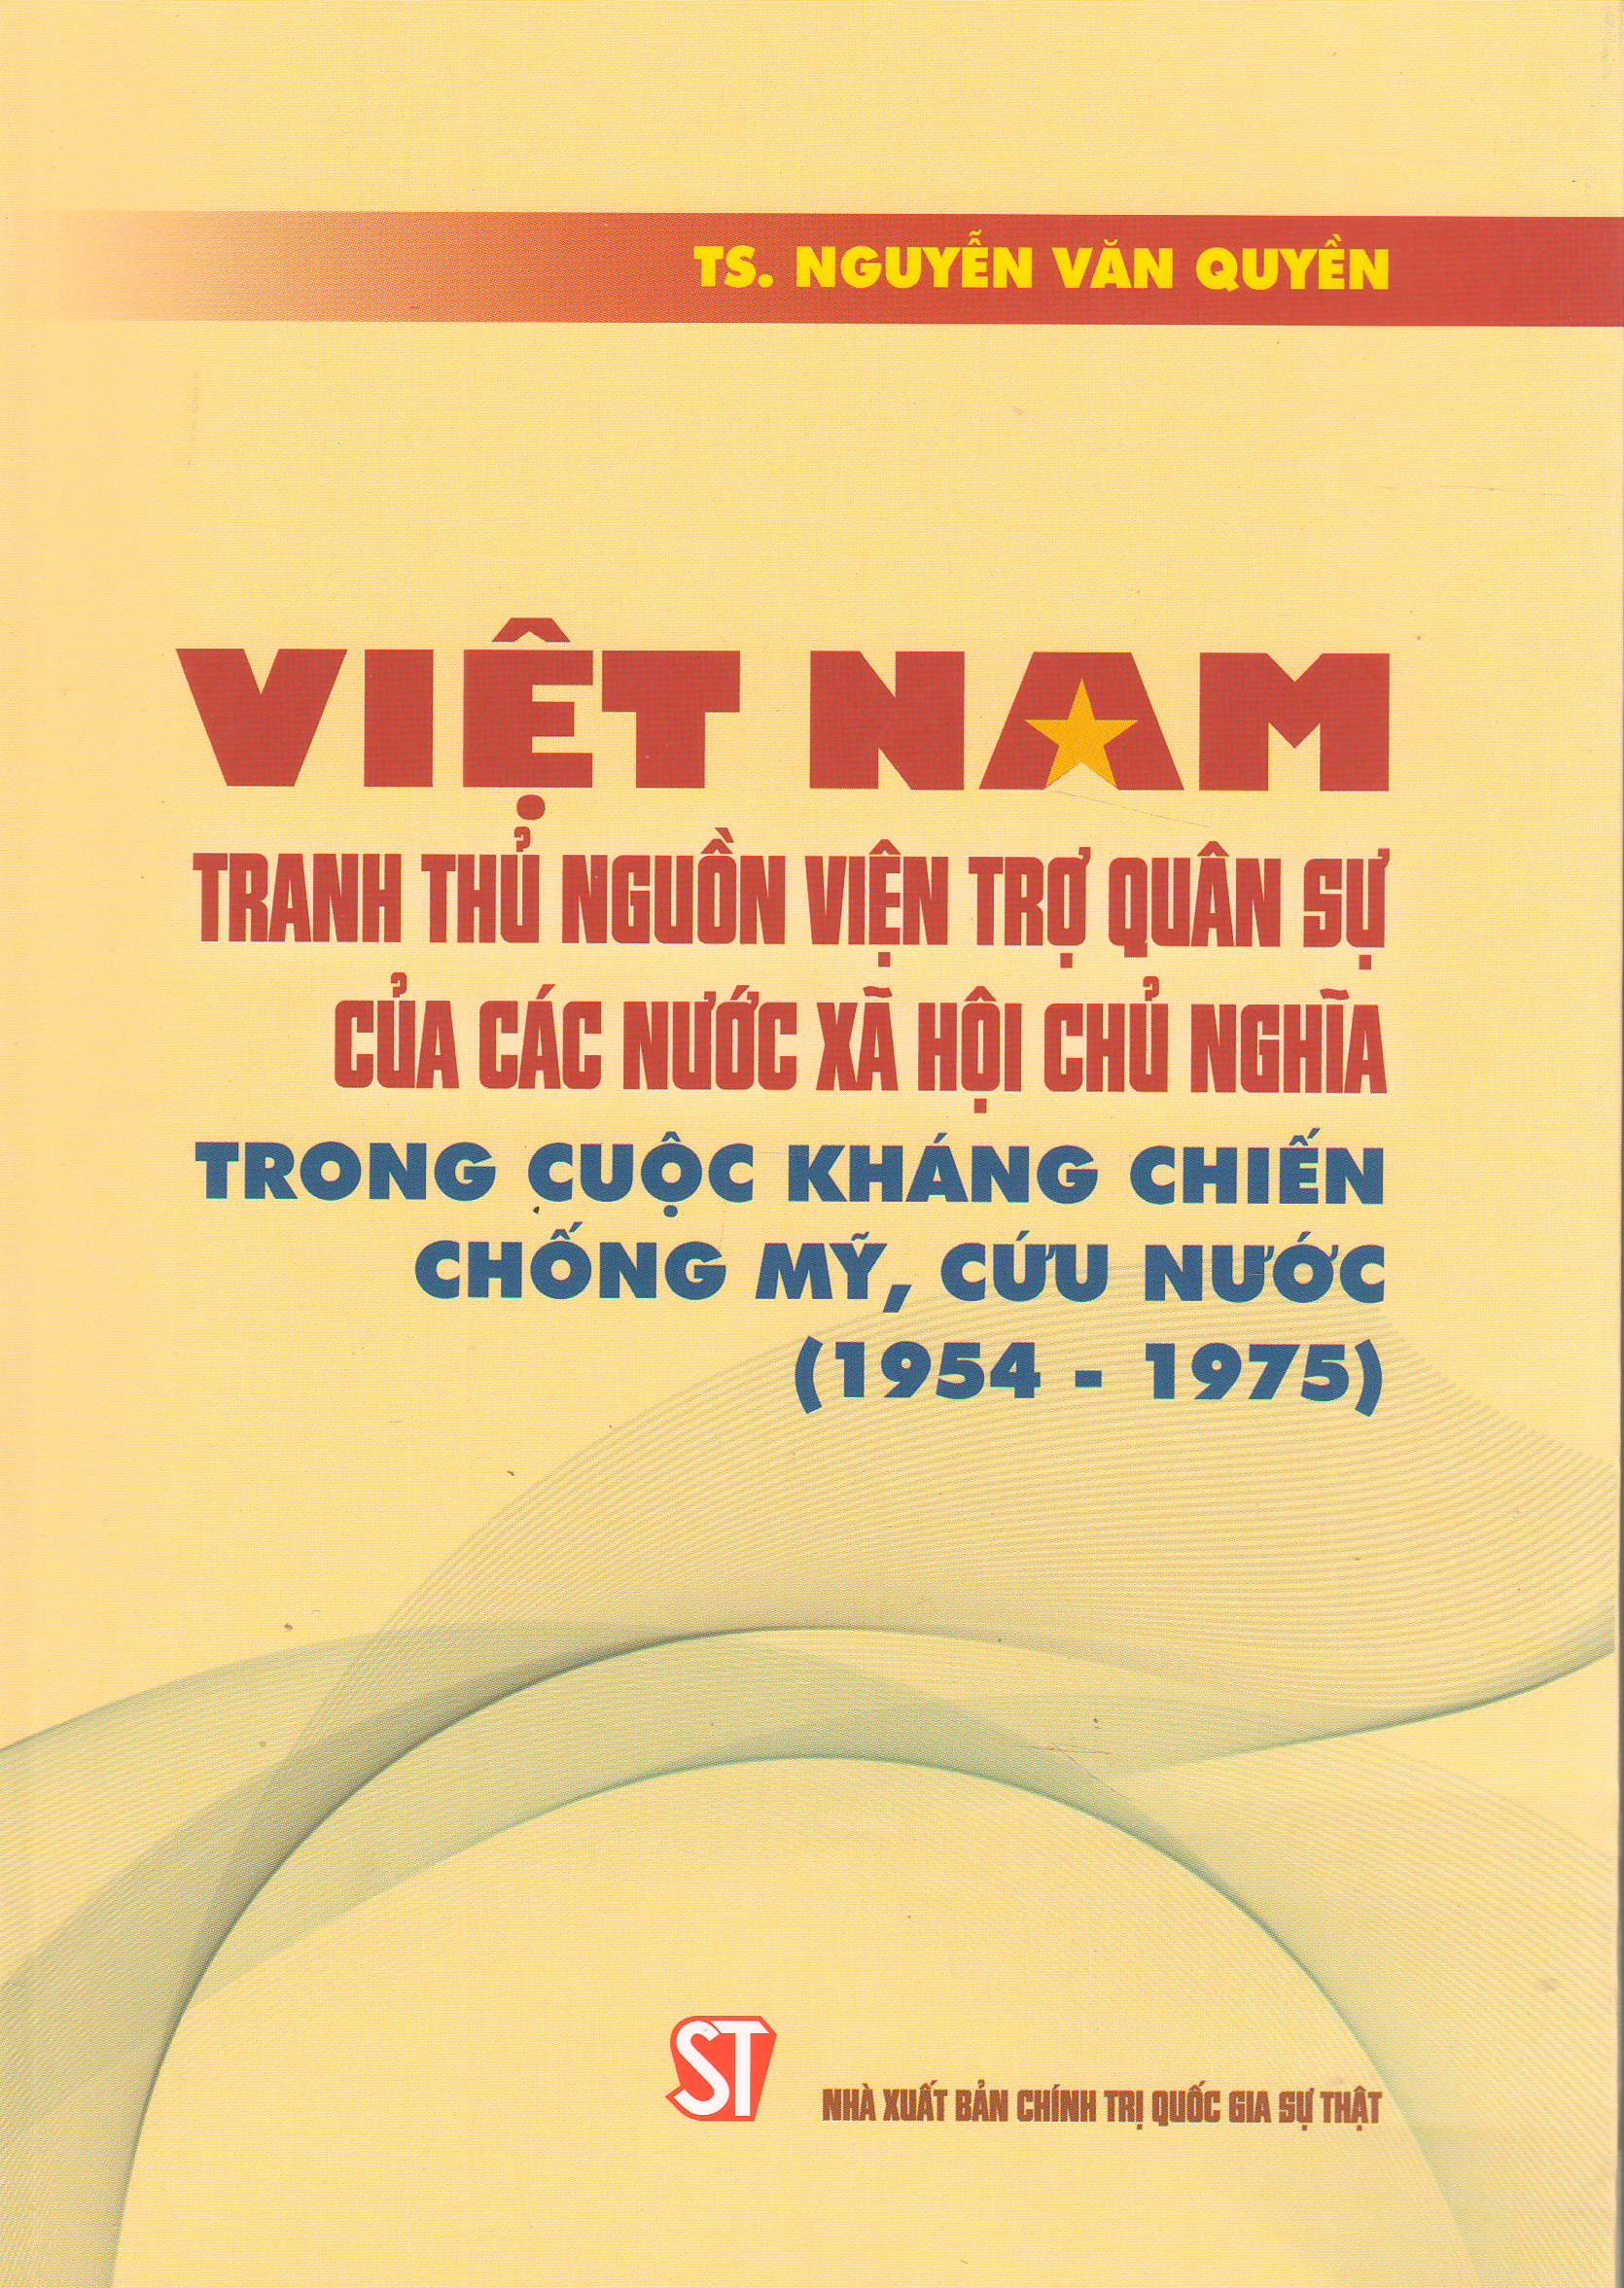 Việt Nam tranh thủ nguồn viện trợ quân sự của các nước xã hội chủ nghĩa trong cuộc kháng chiến chống Mỹ, cứu nước (1954 - 1975)